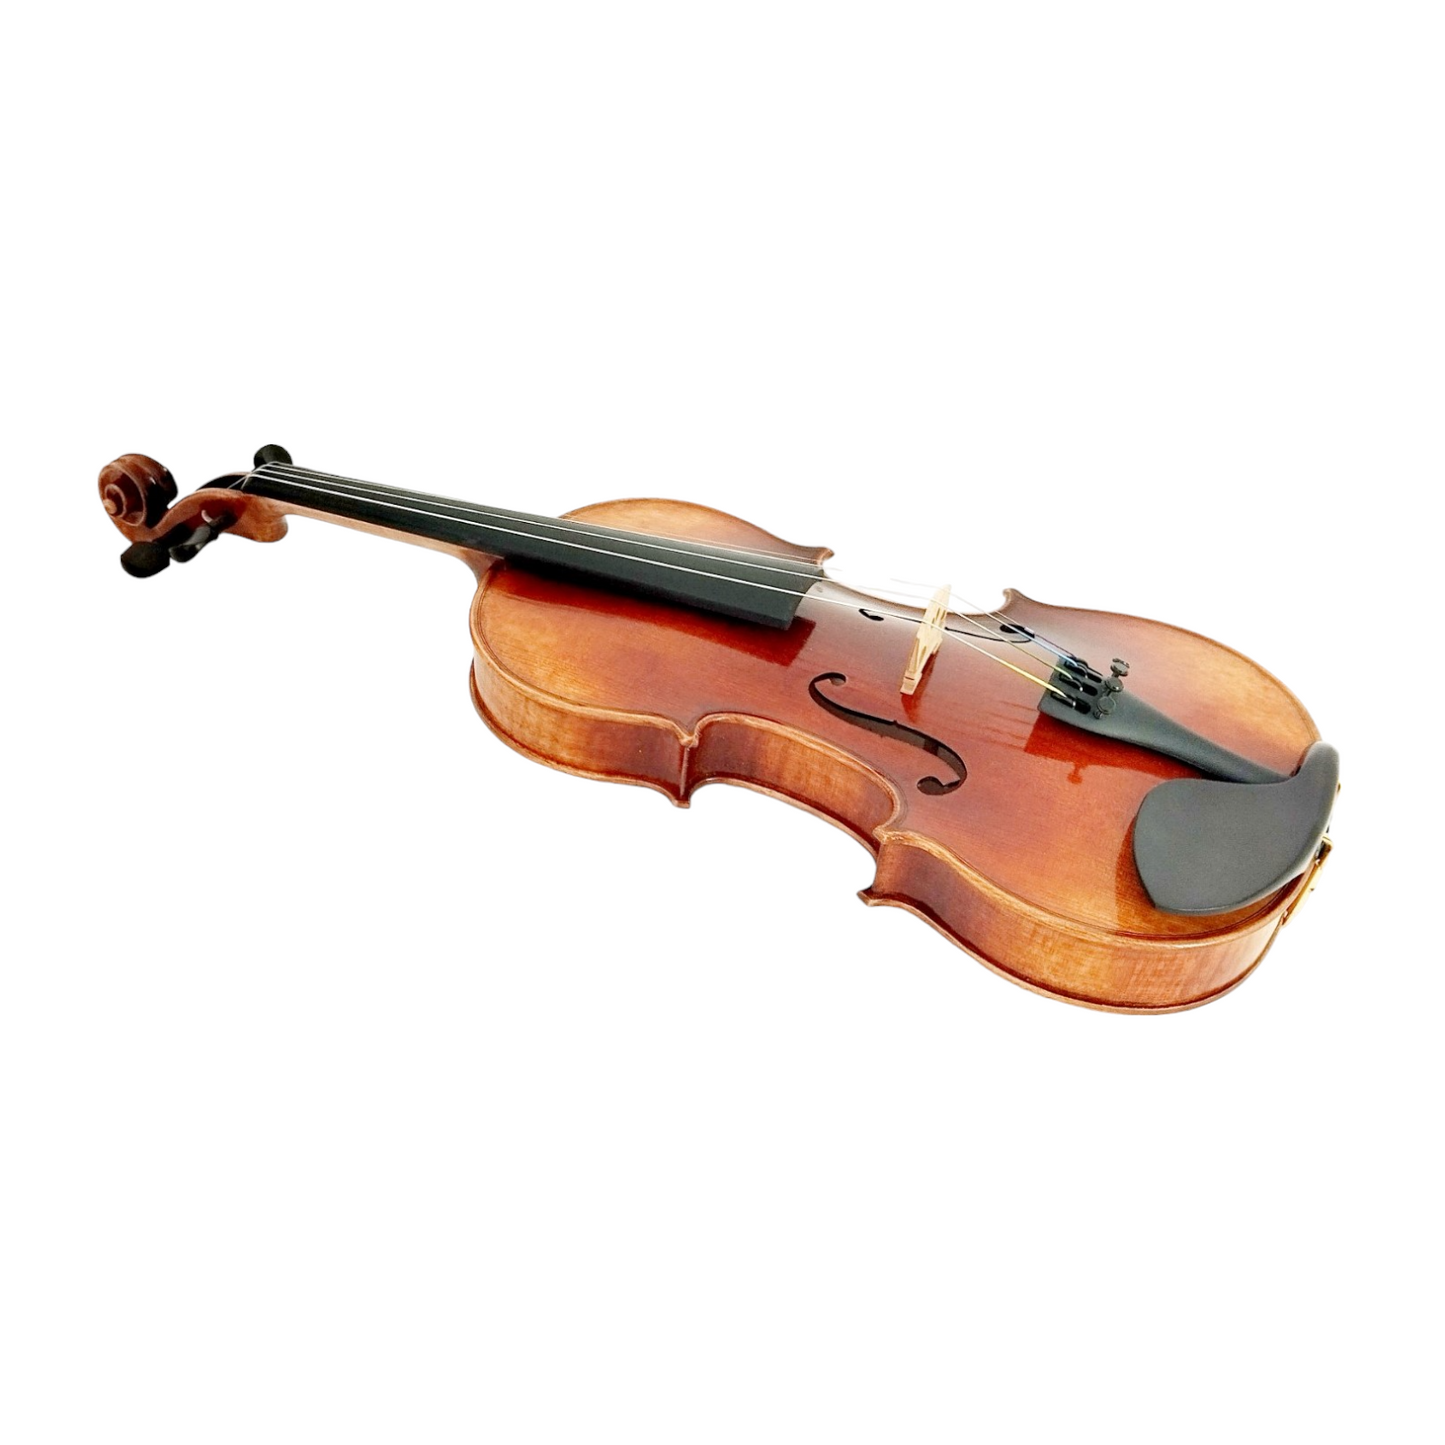 Melodic Majesty, The PVE80 Symphony Violin